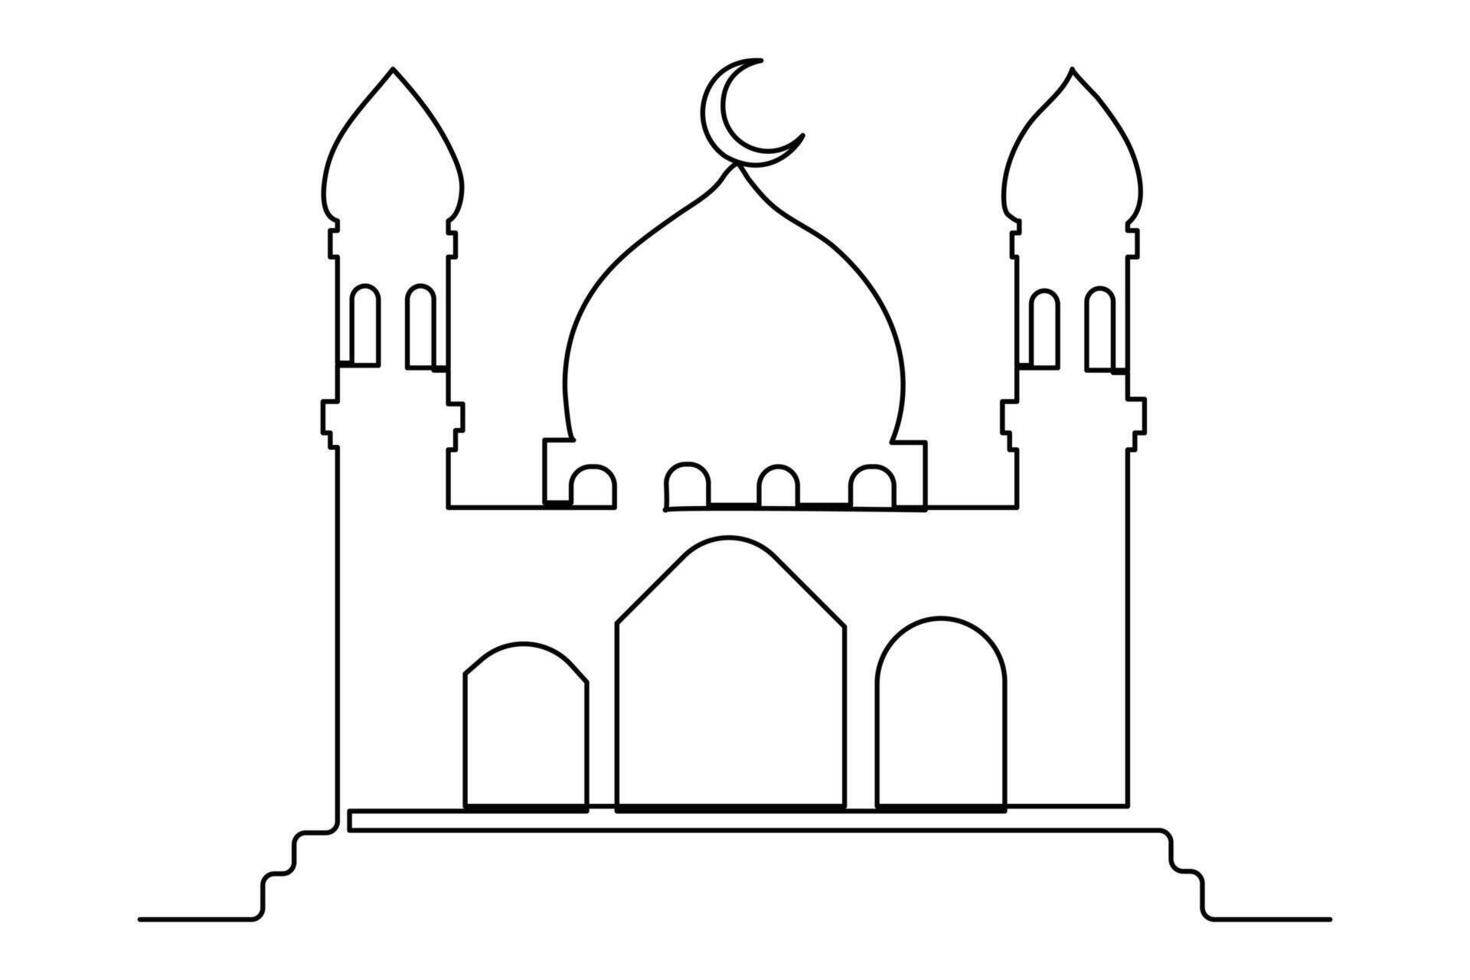 kontinuierlich einer Linie Zeichnung Ramadan kareem Symbol. Moschee Linie Konzept. eid Mubarak, eid fitr Vektor minimalistisch Design islamisch Moschee Gliederung Ornament Hintergrund.